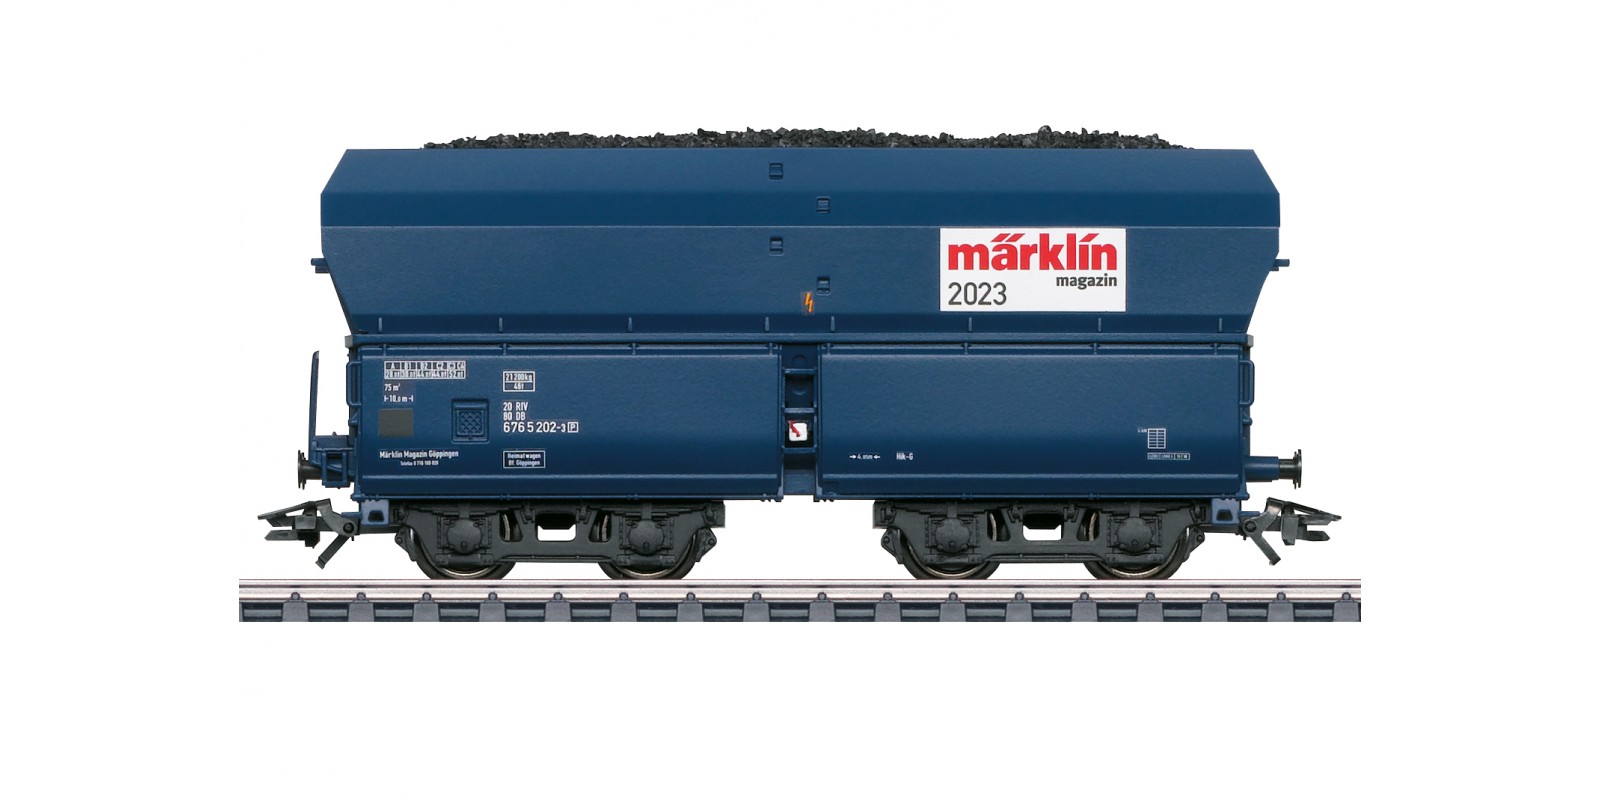 48523 H0 Märklin Mag. Car for 2023